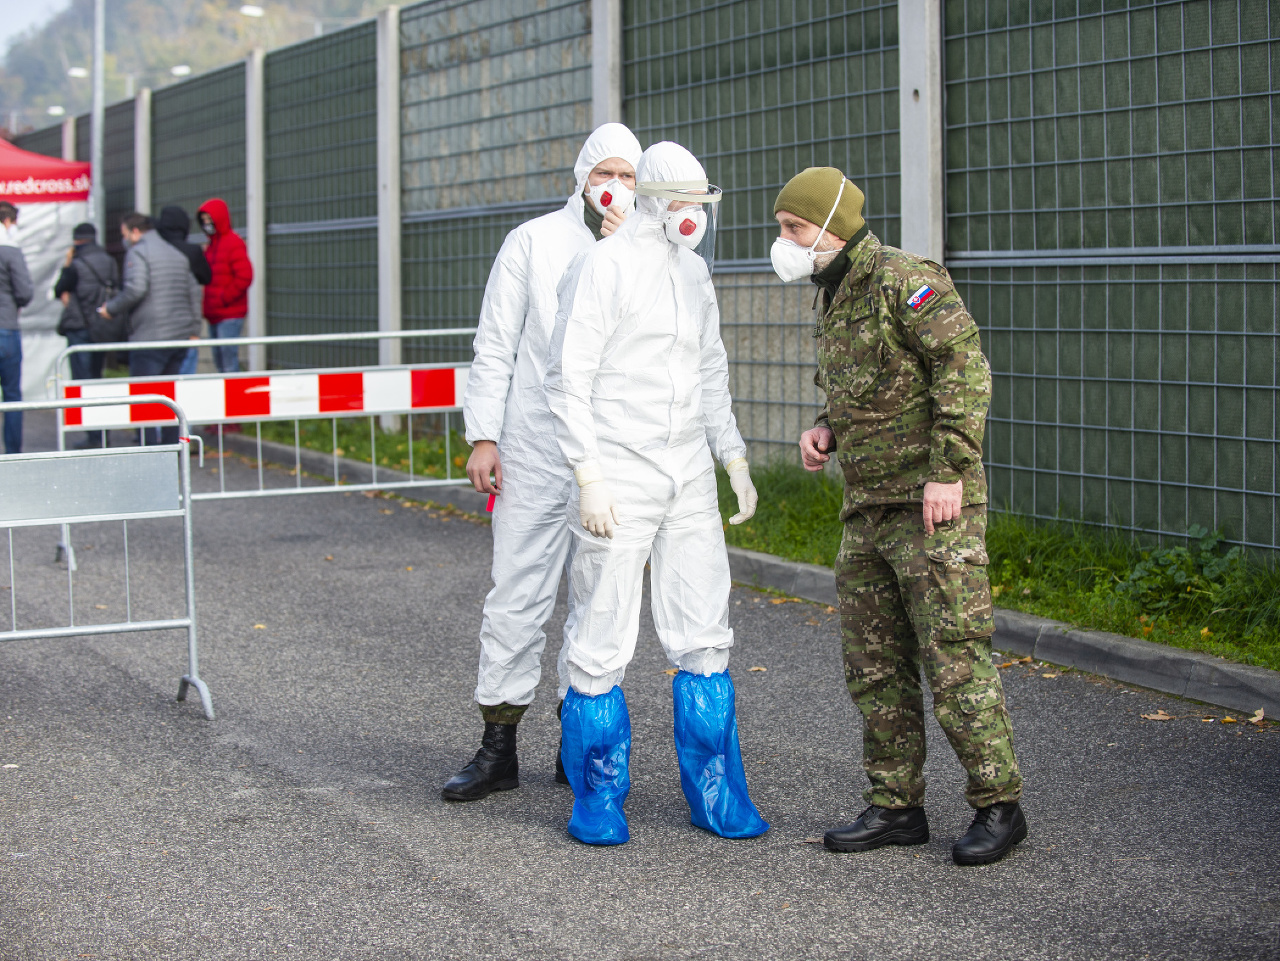 Testovanie na odbernom mieste v Mlynskej doline 7. novembra 2020 v Bratislave. (Ilustračné foto)